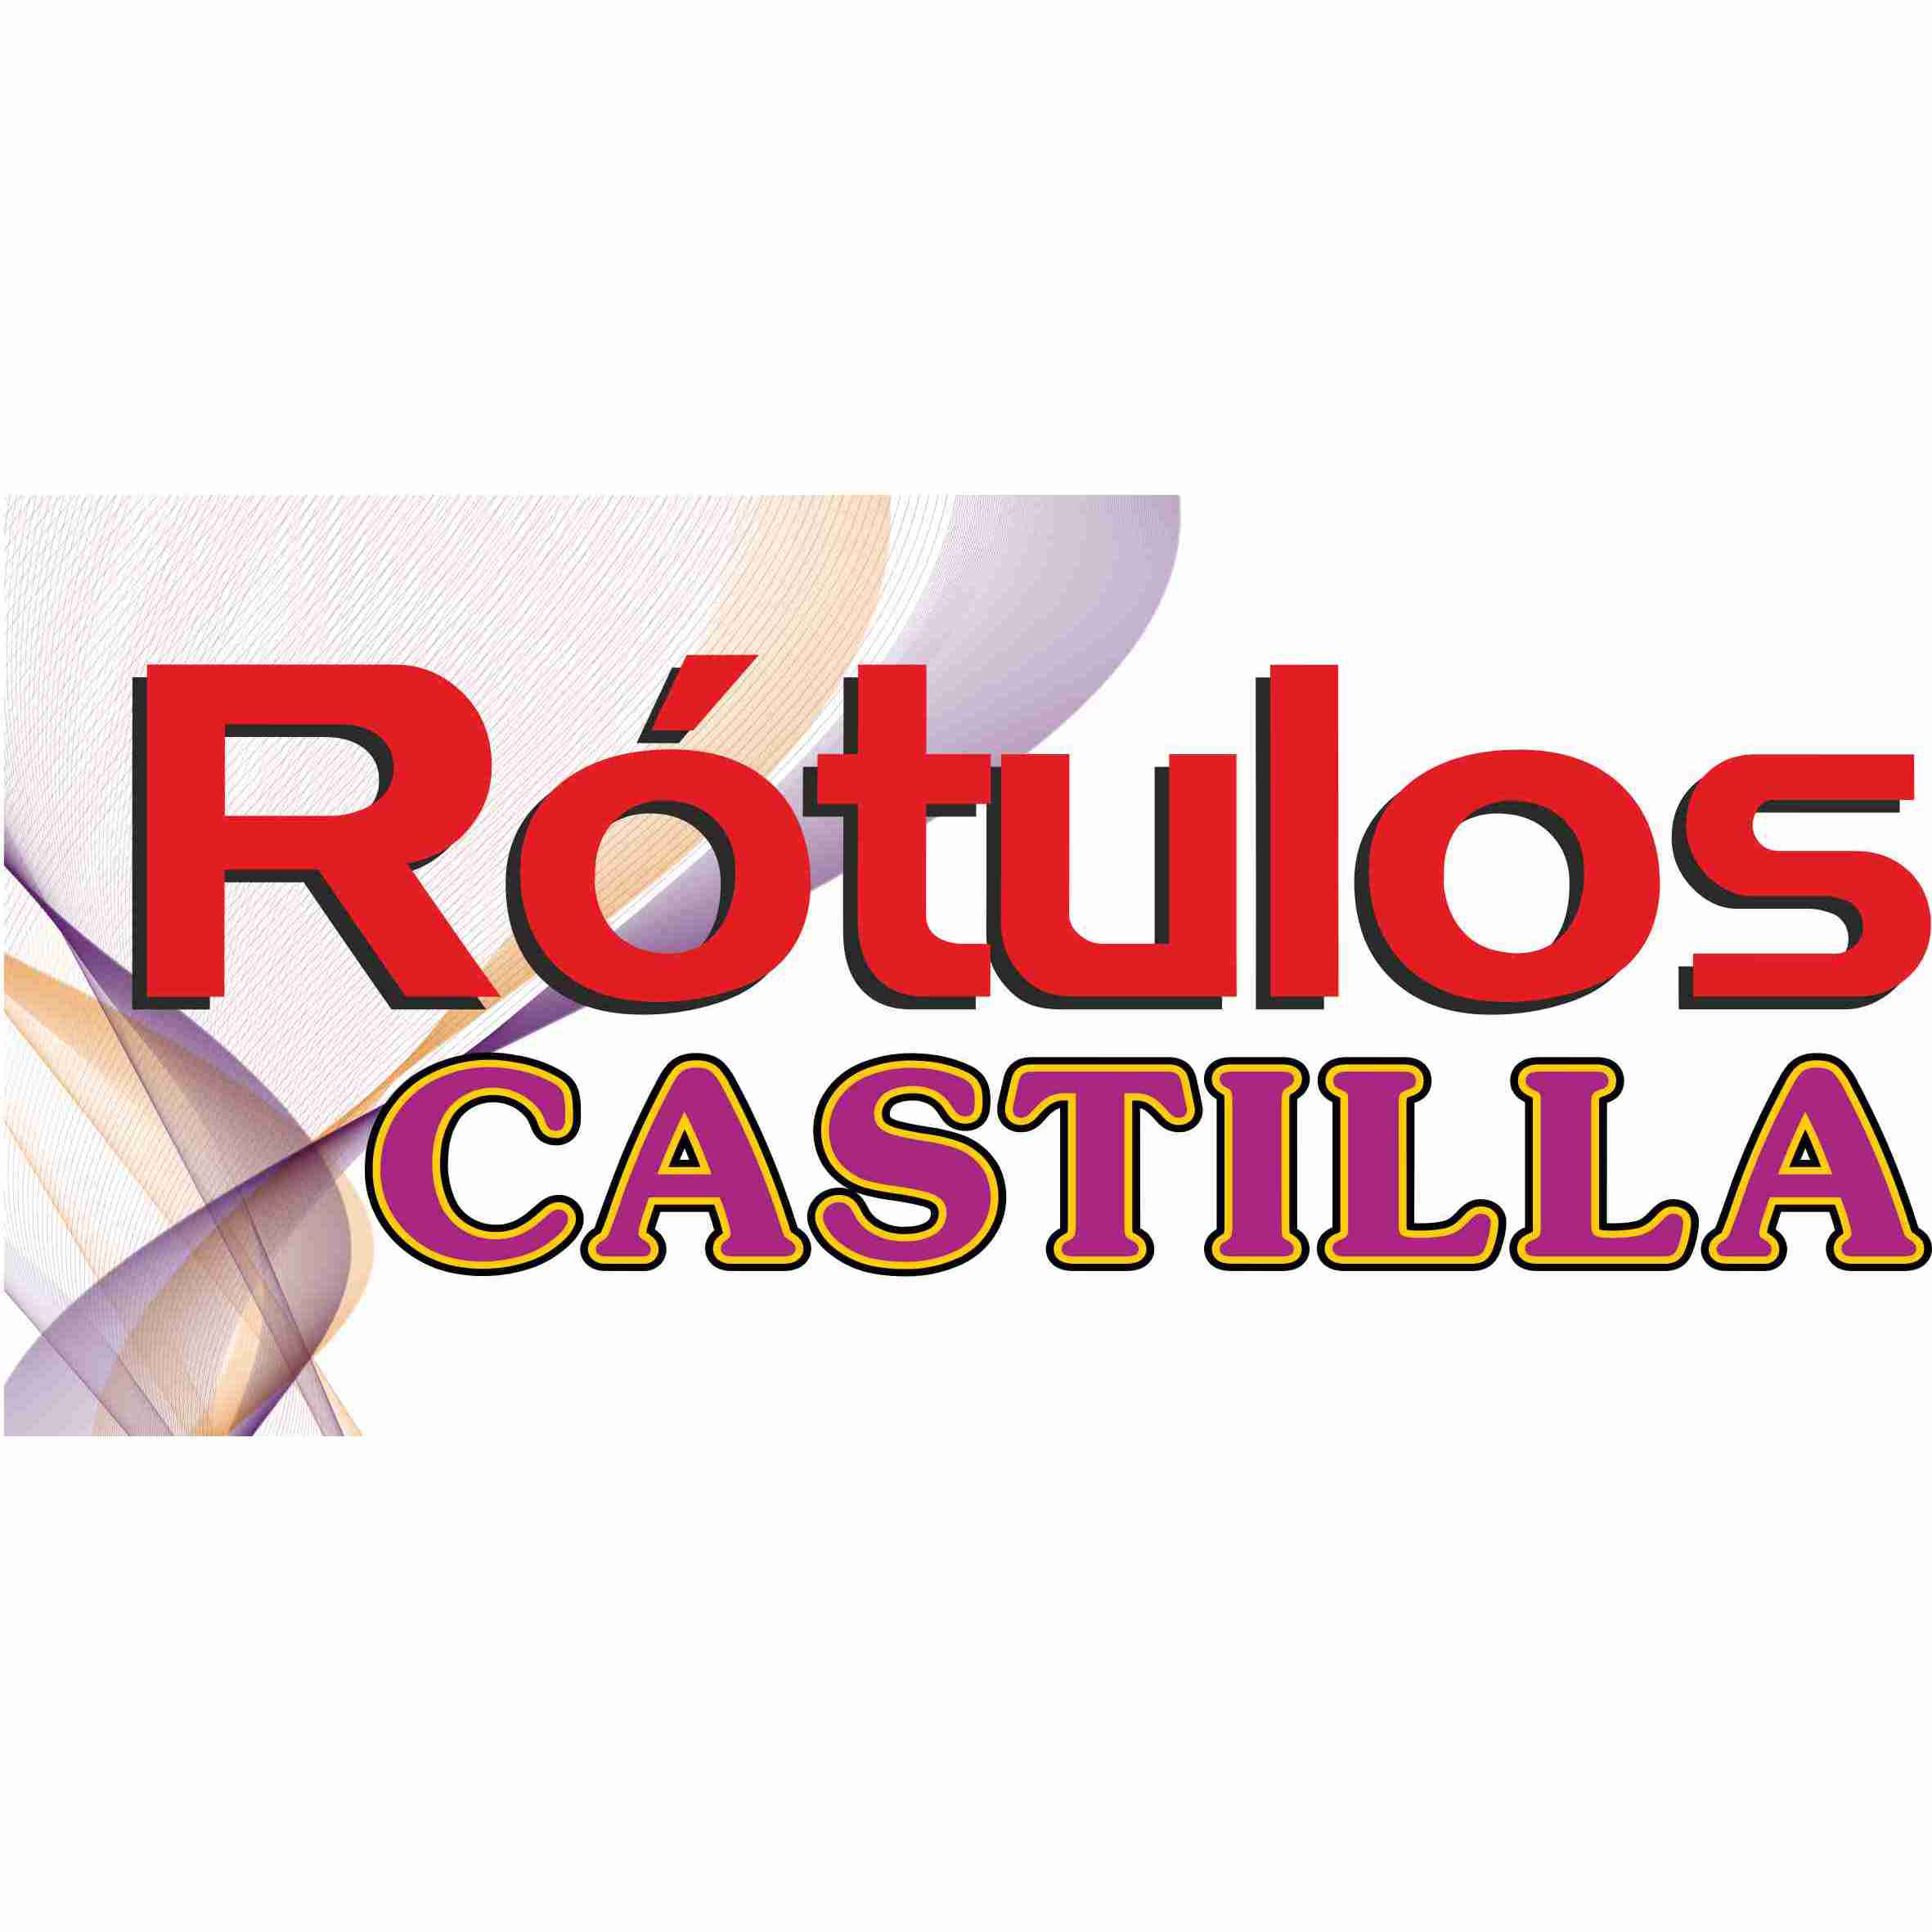 Rotulación y Diseño Castilla Logo